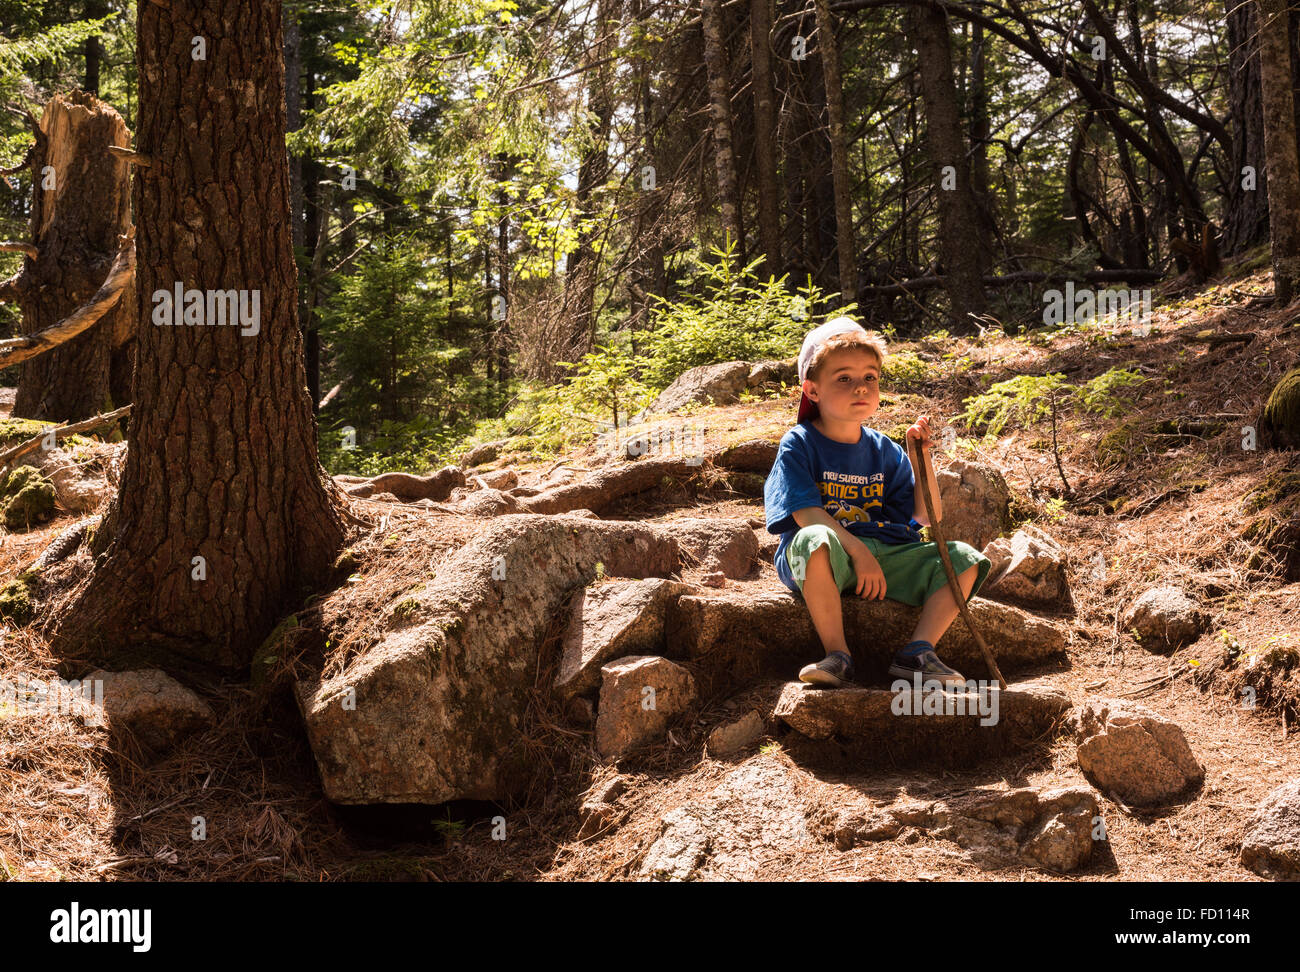 Un garçon de 5 ans prend une pause au cours d'une randonnée en famille dans l'Acadia National Park. Banque D'Images